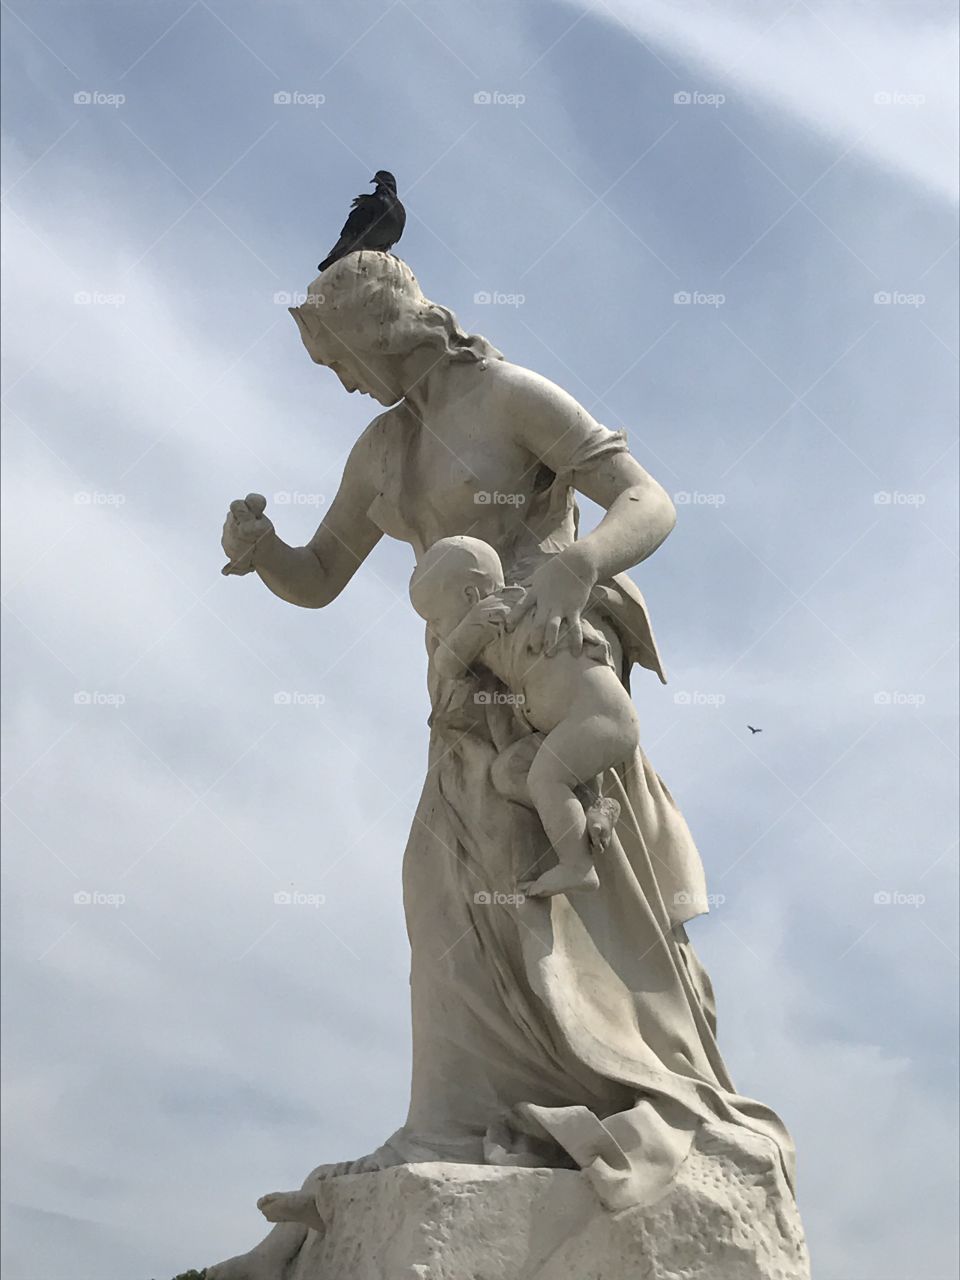 Bird on a sculpture 